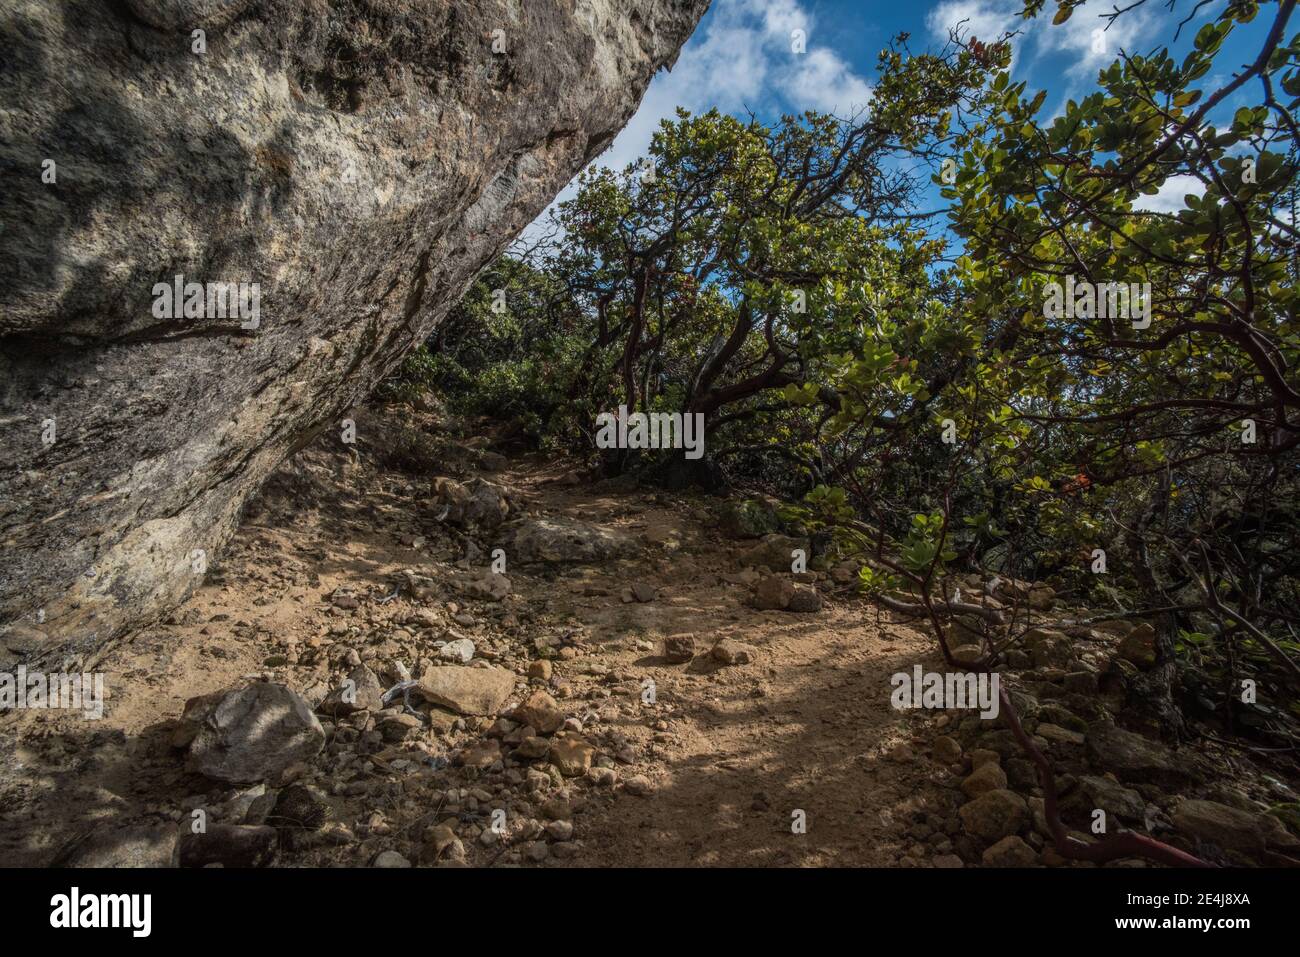 Un coin ombragé par un rocher et chaparral dans les montagnes de Santa Cruz, dans le parc régional de Castle Rock, Californie. Banque D'Images